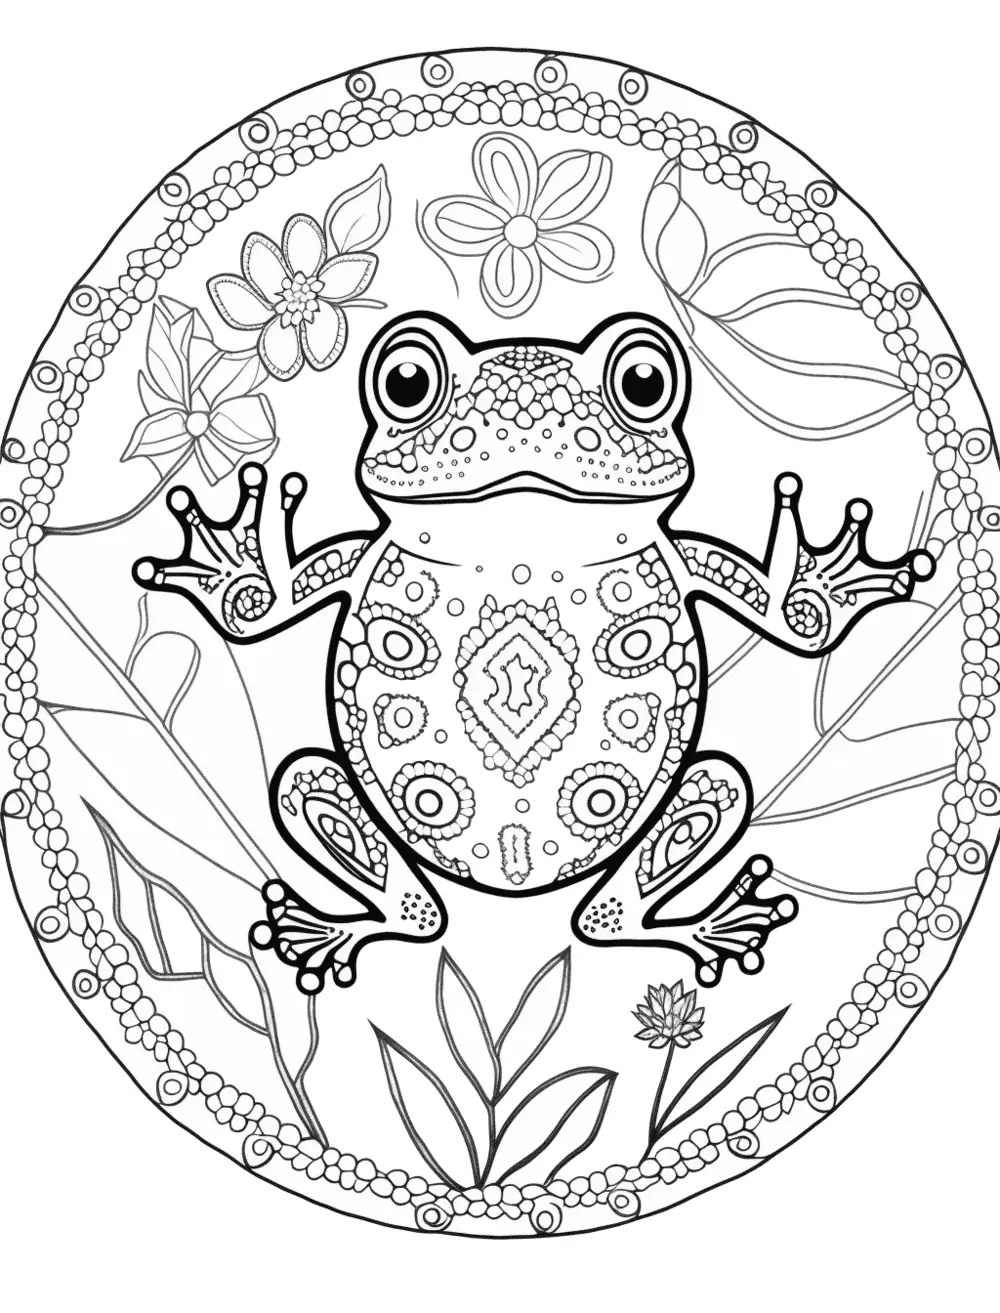 Dibujos para Colorear Mandala Frog